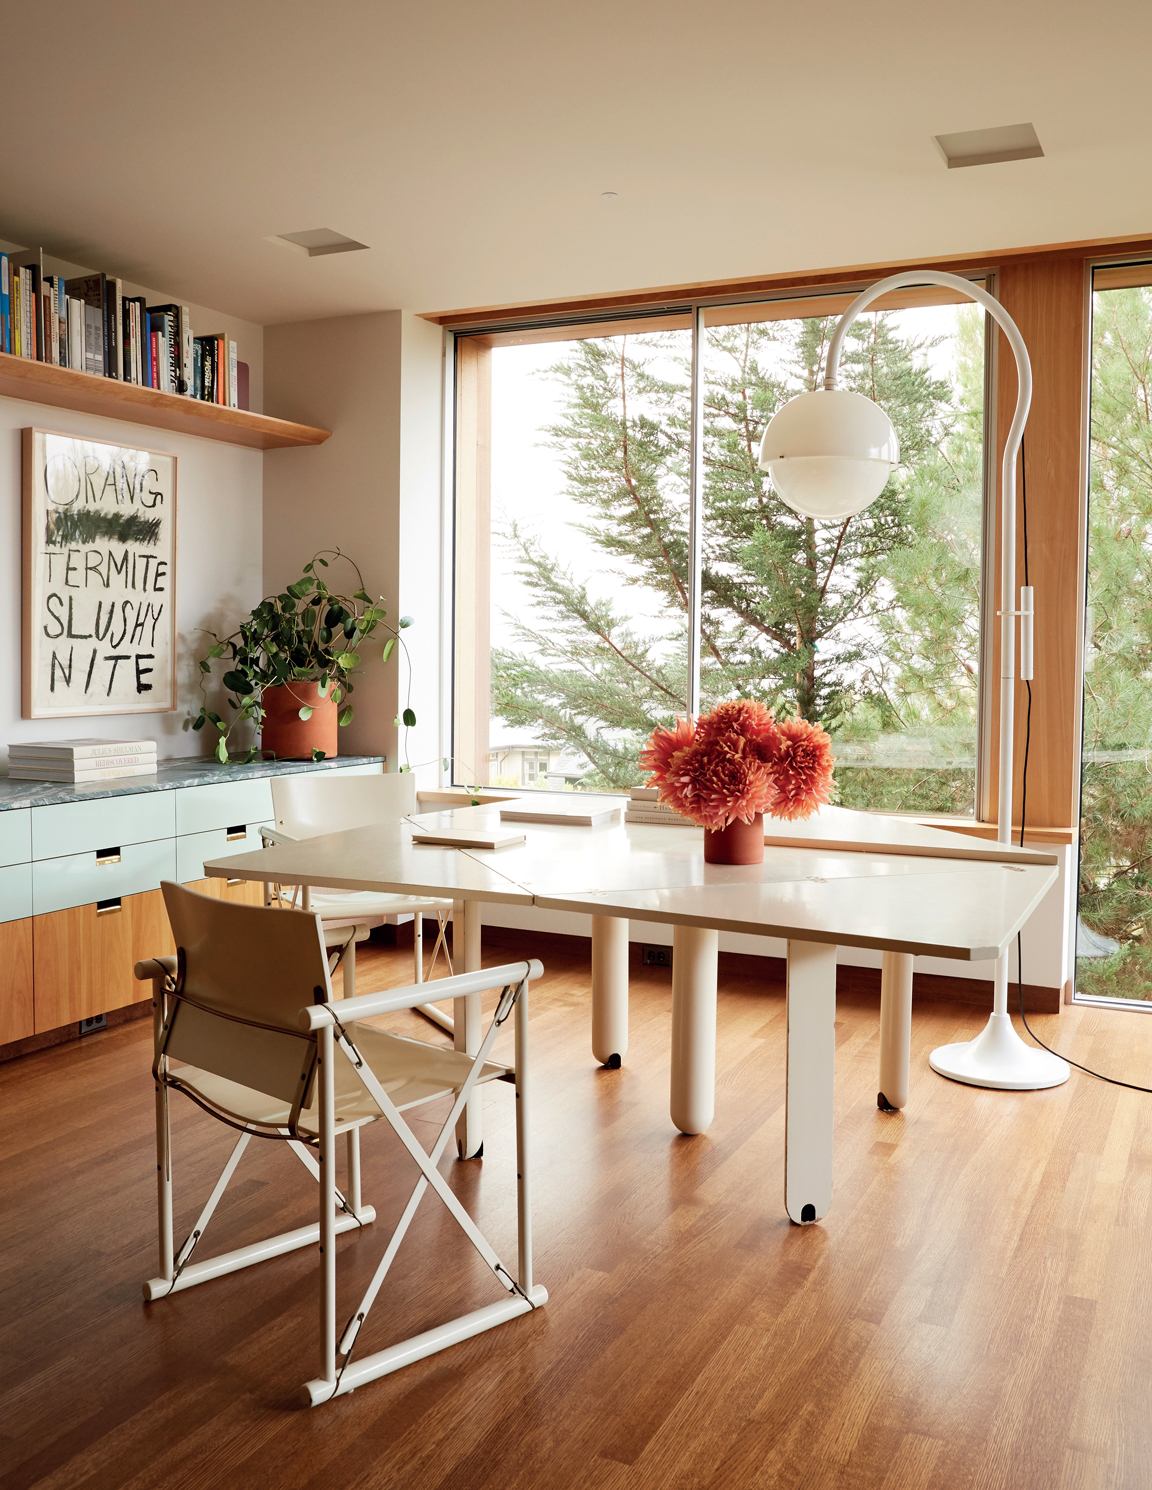 Góc làm việc có thiết kế nội thất đơn giản nhưng thanh lịch, kết hợp với view nhìn ra khung cảnh xanh ngát bên ngoài tràn đầy cảm hứng.